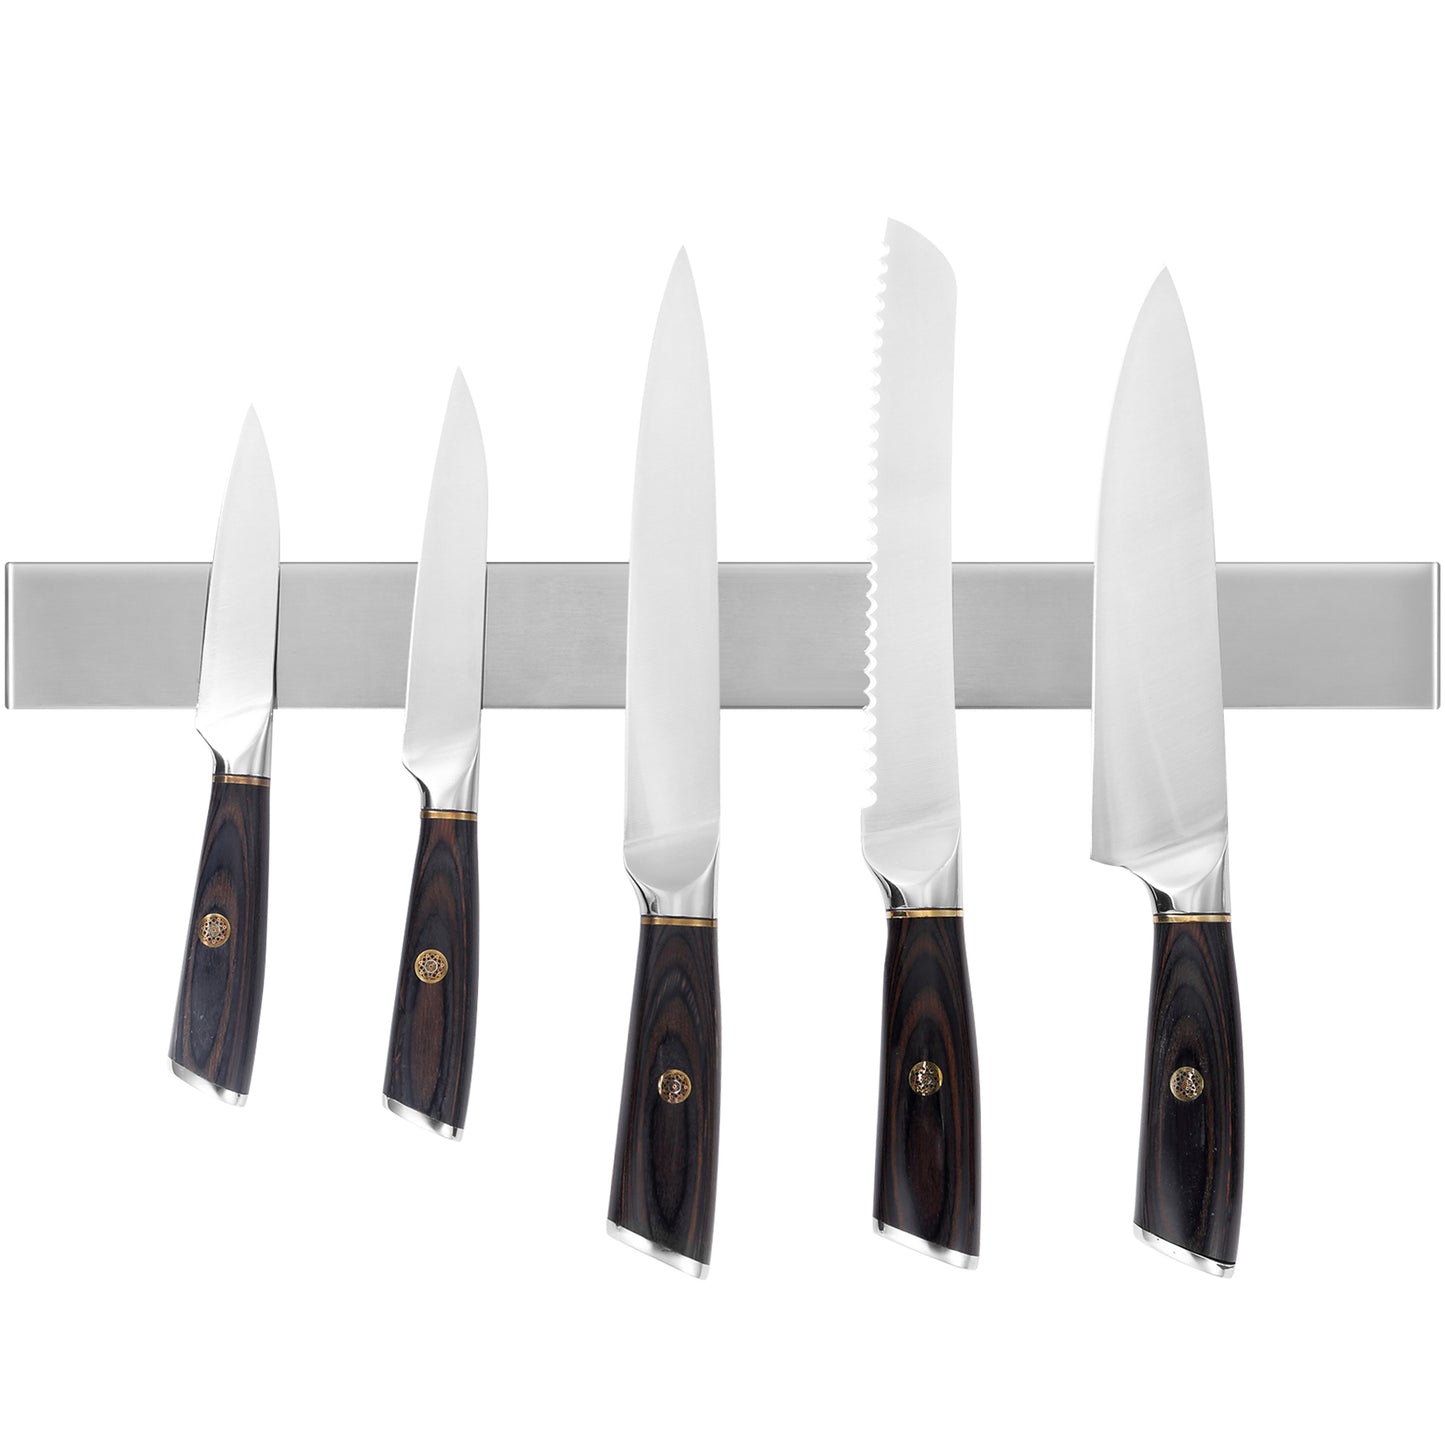 18 Inch Magnetic Knife Strip, Magnetic Knife Holder, 18/10 Stainless Steel Knife Rack, Magnetic Knife Bar, Kitchen Utensil Holder, Easy Installation